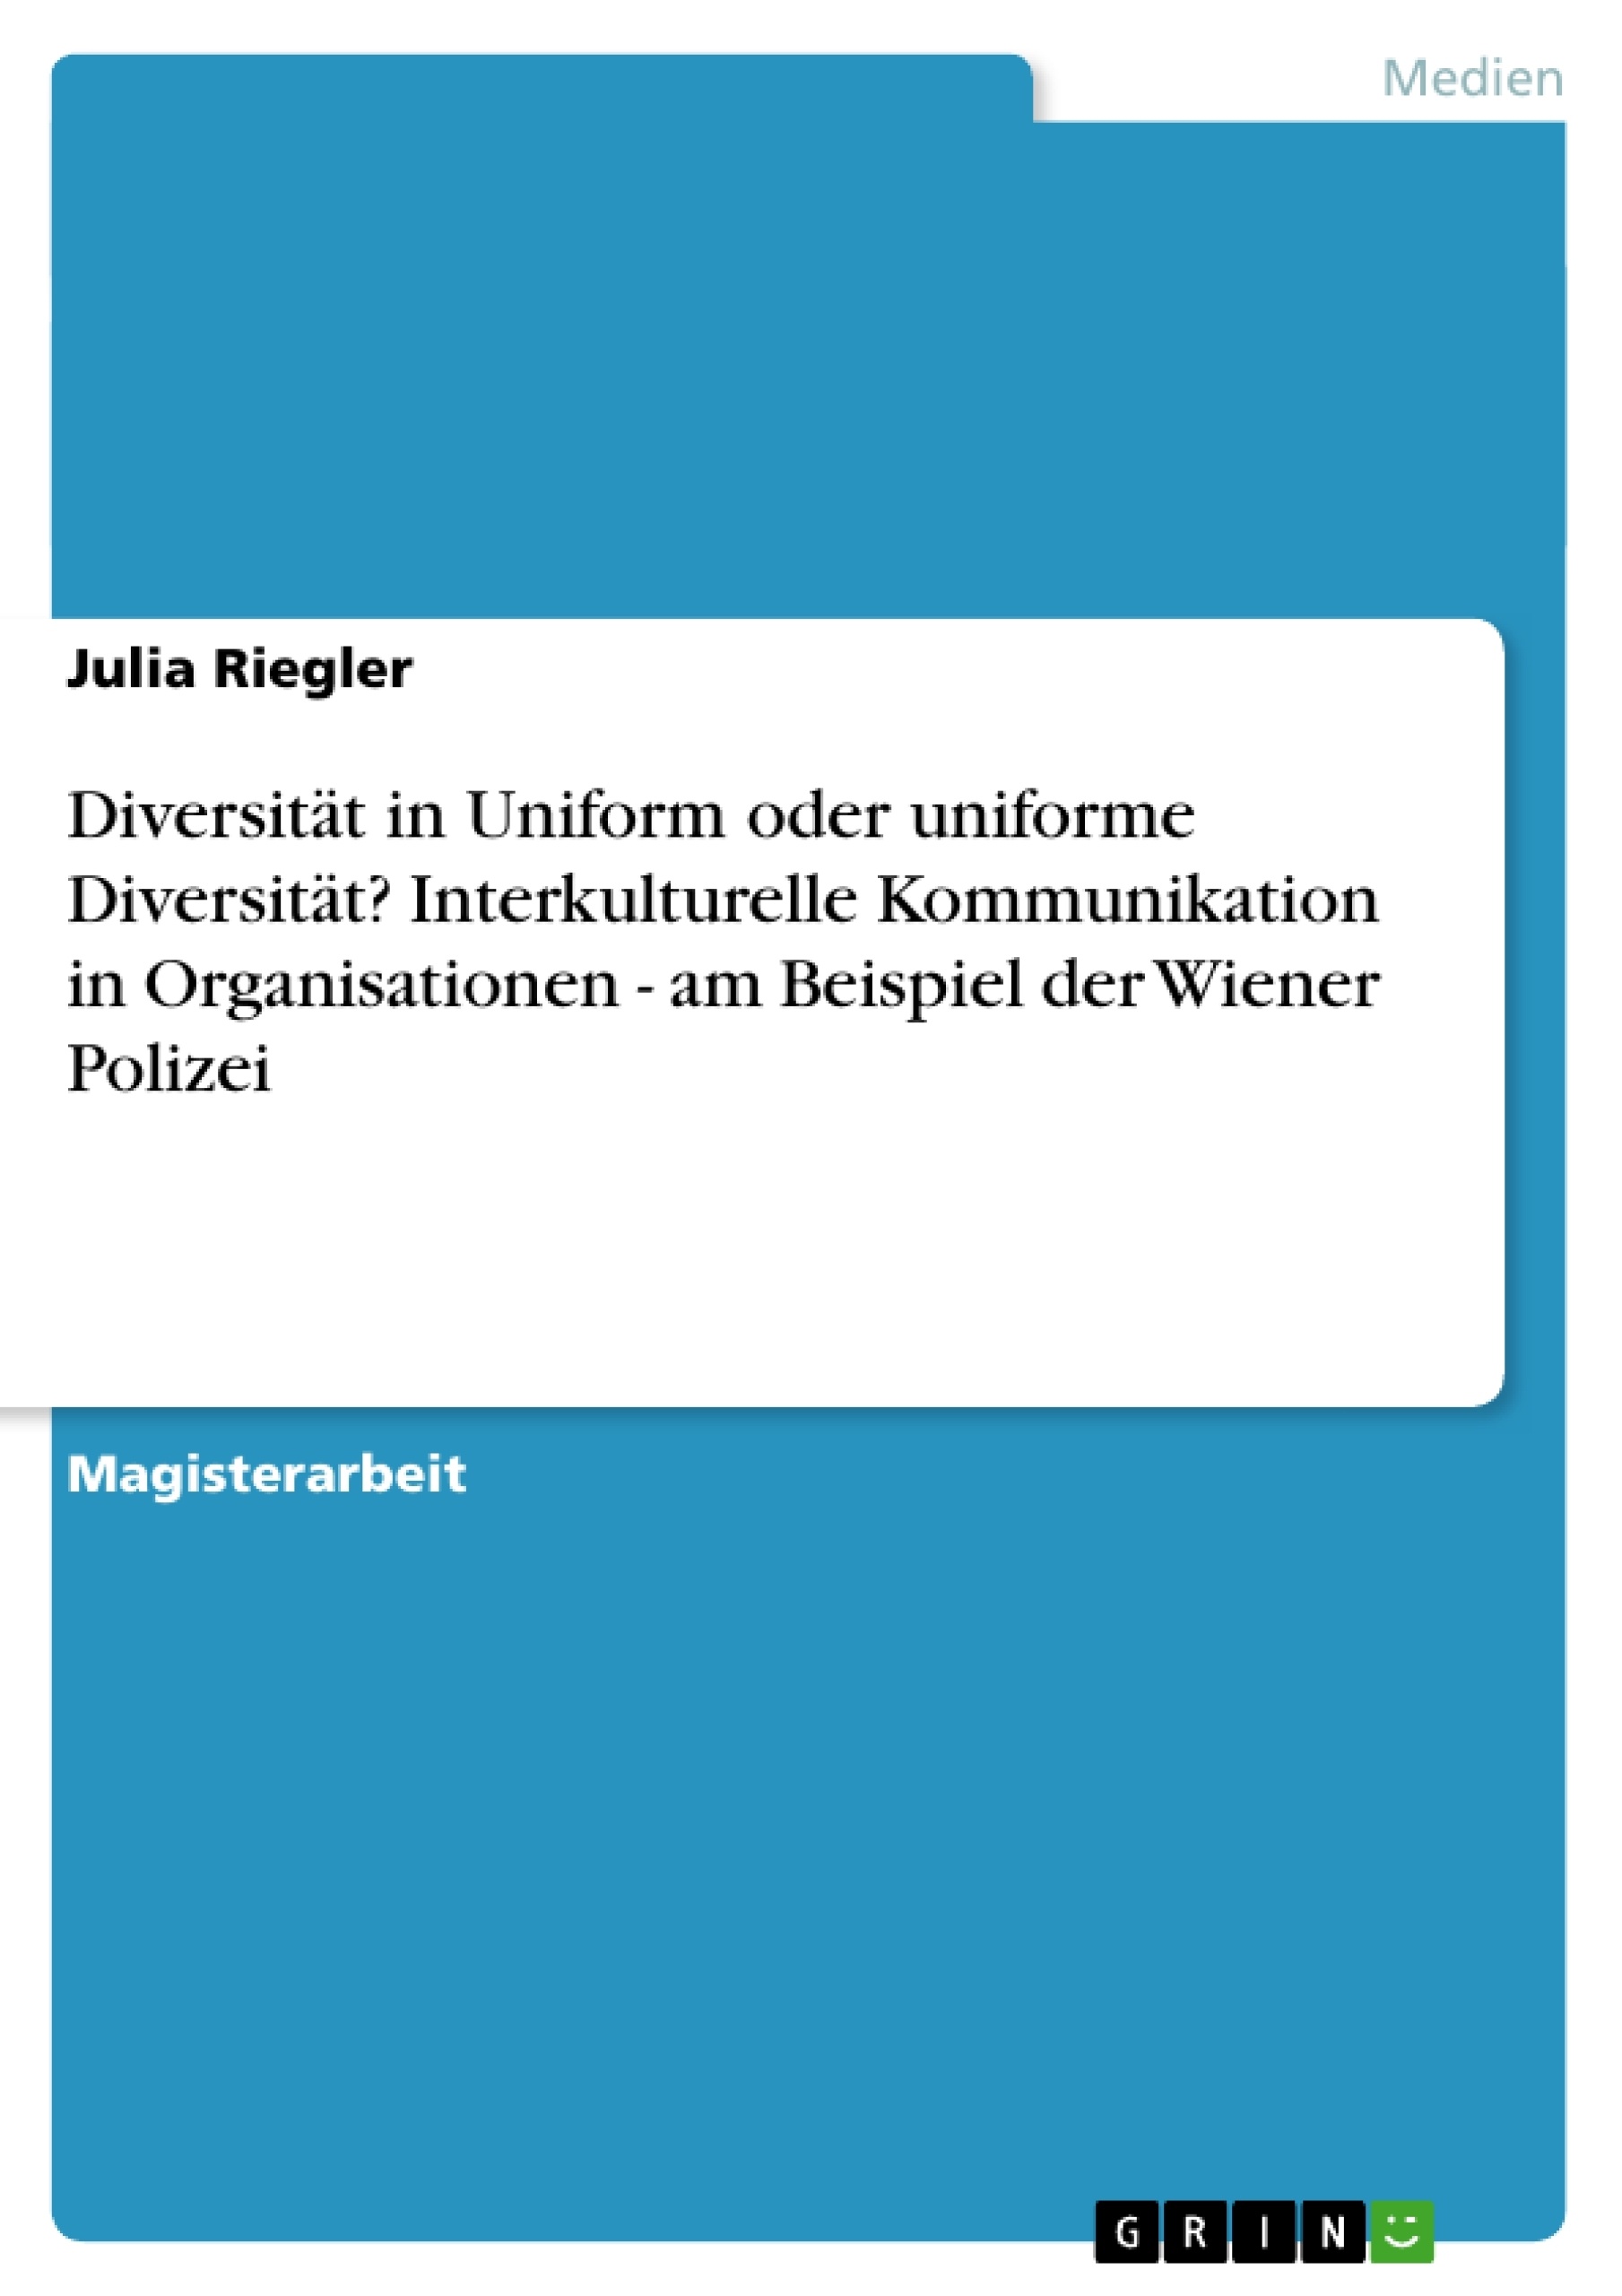 Title: Diversität in Uniform oder uniforme Diversität? Interkulturelle Kommunikation in Organisationen - am Beispiel der Wiener Polizei